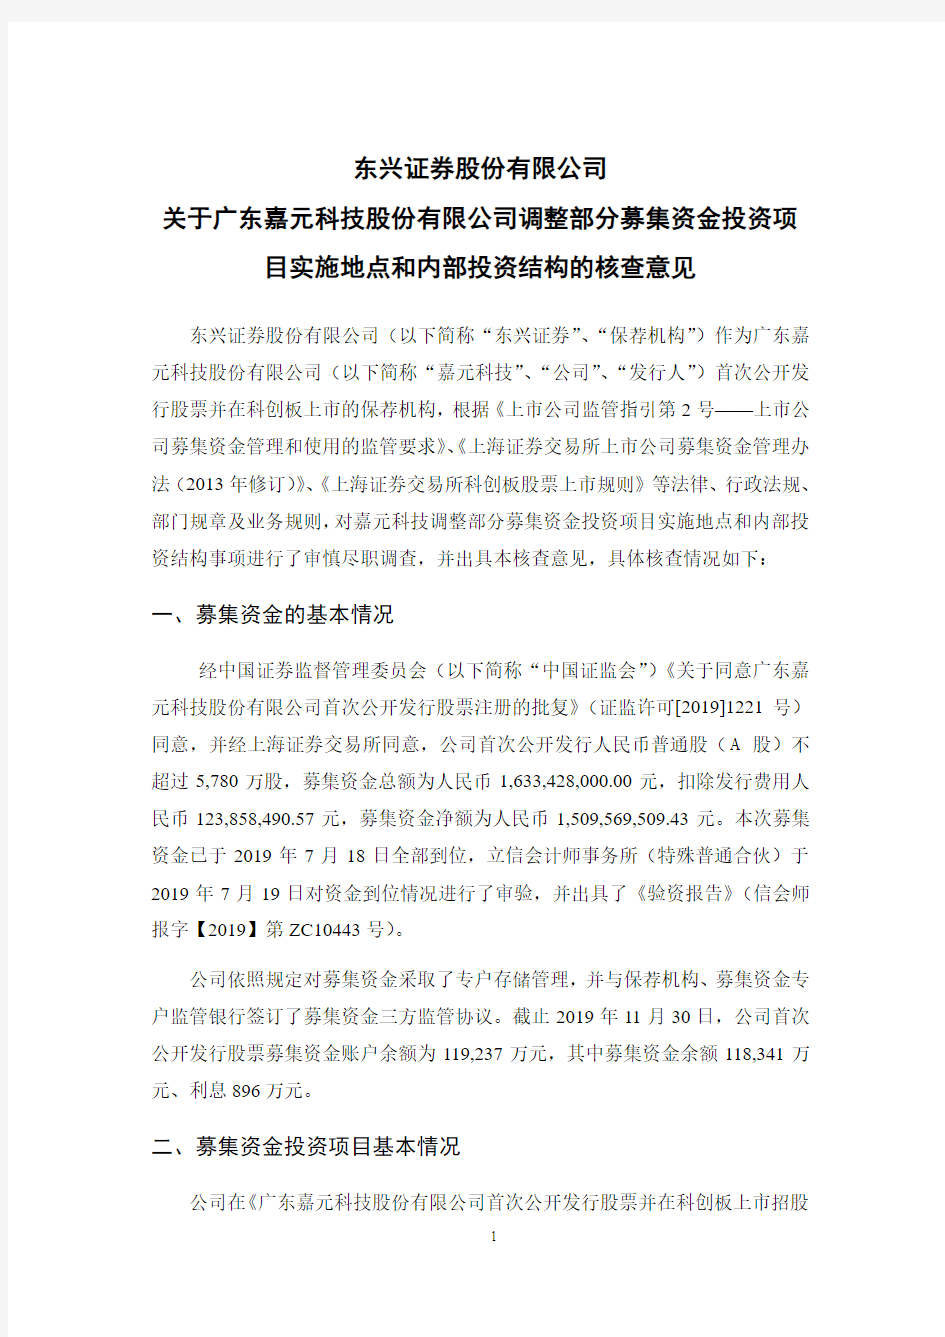 东兴证券股份有限公司关于广东嘉元科技股份有限公司调整